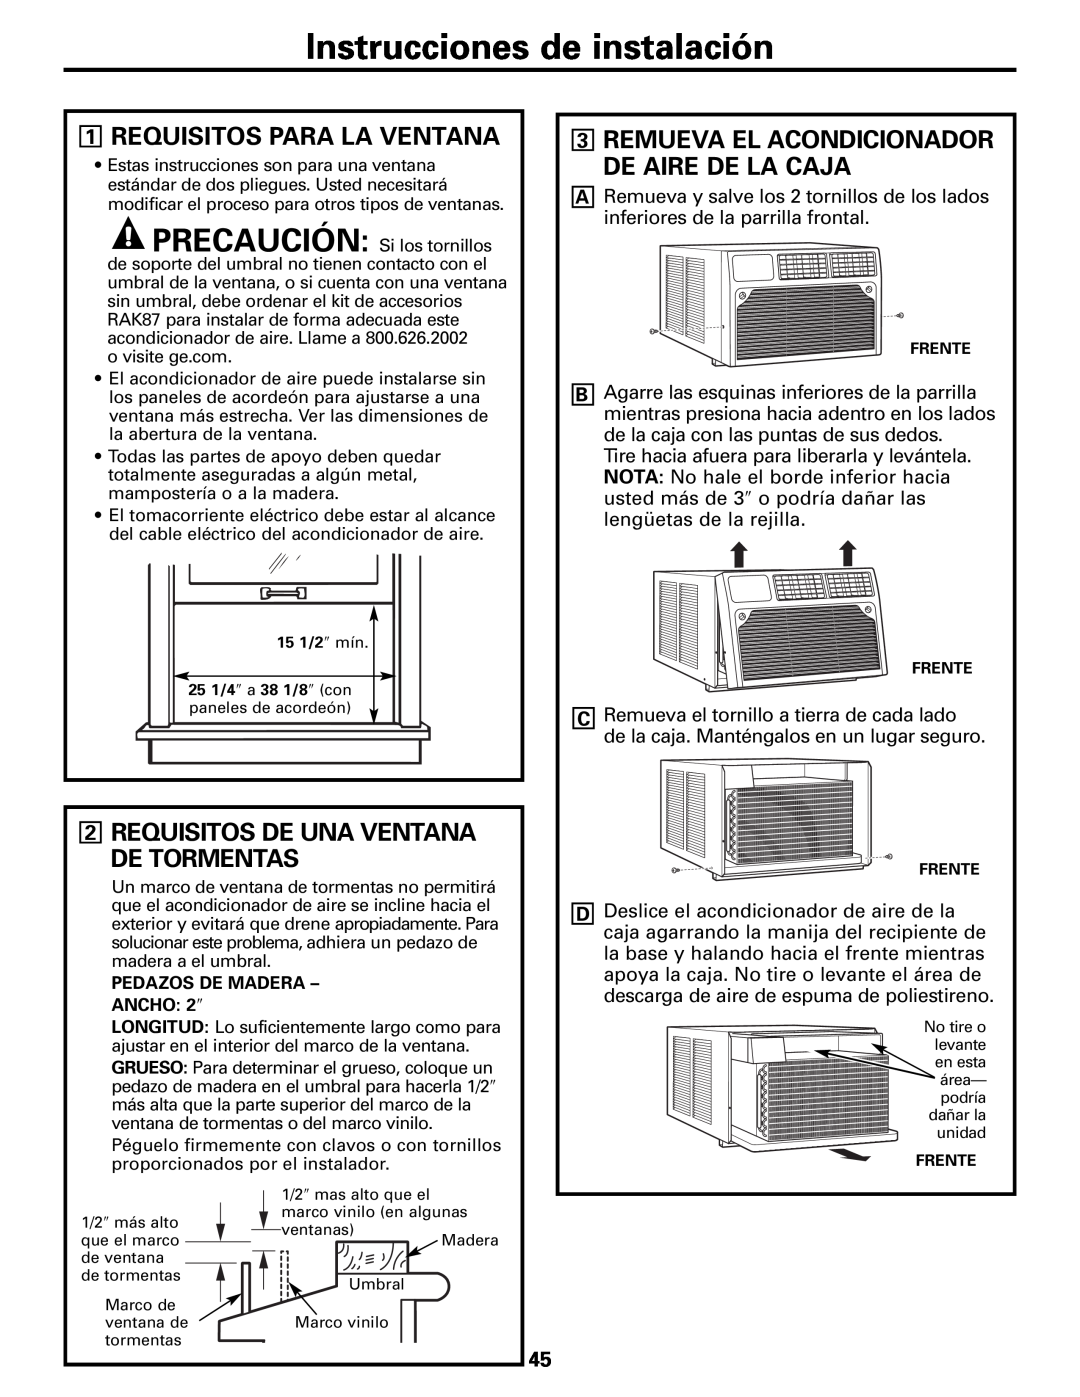 GE AEM10 owner manual Instrucciones de instalación, Requisitos Para La Ventana, Requisitos De Una Ventana De Tormentas 